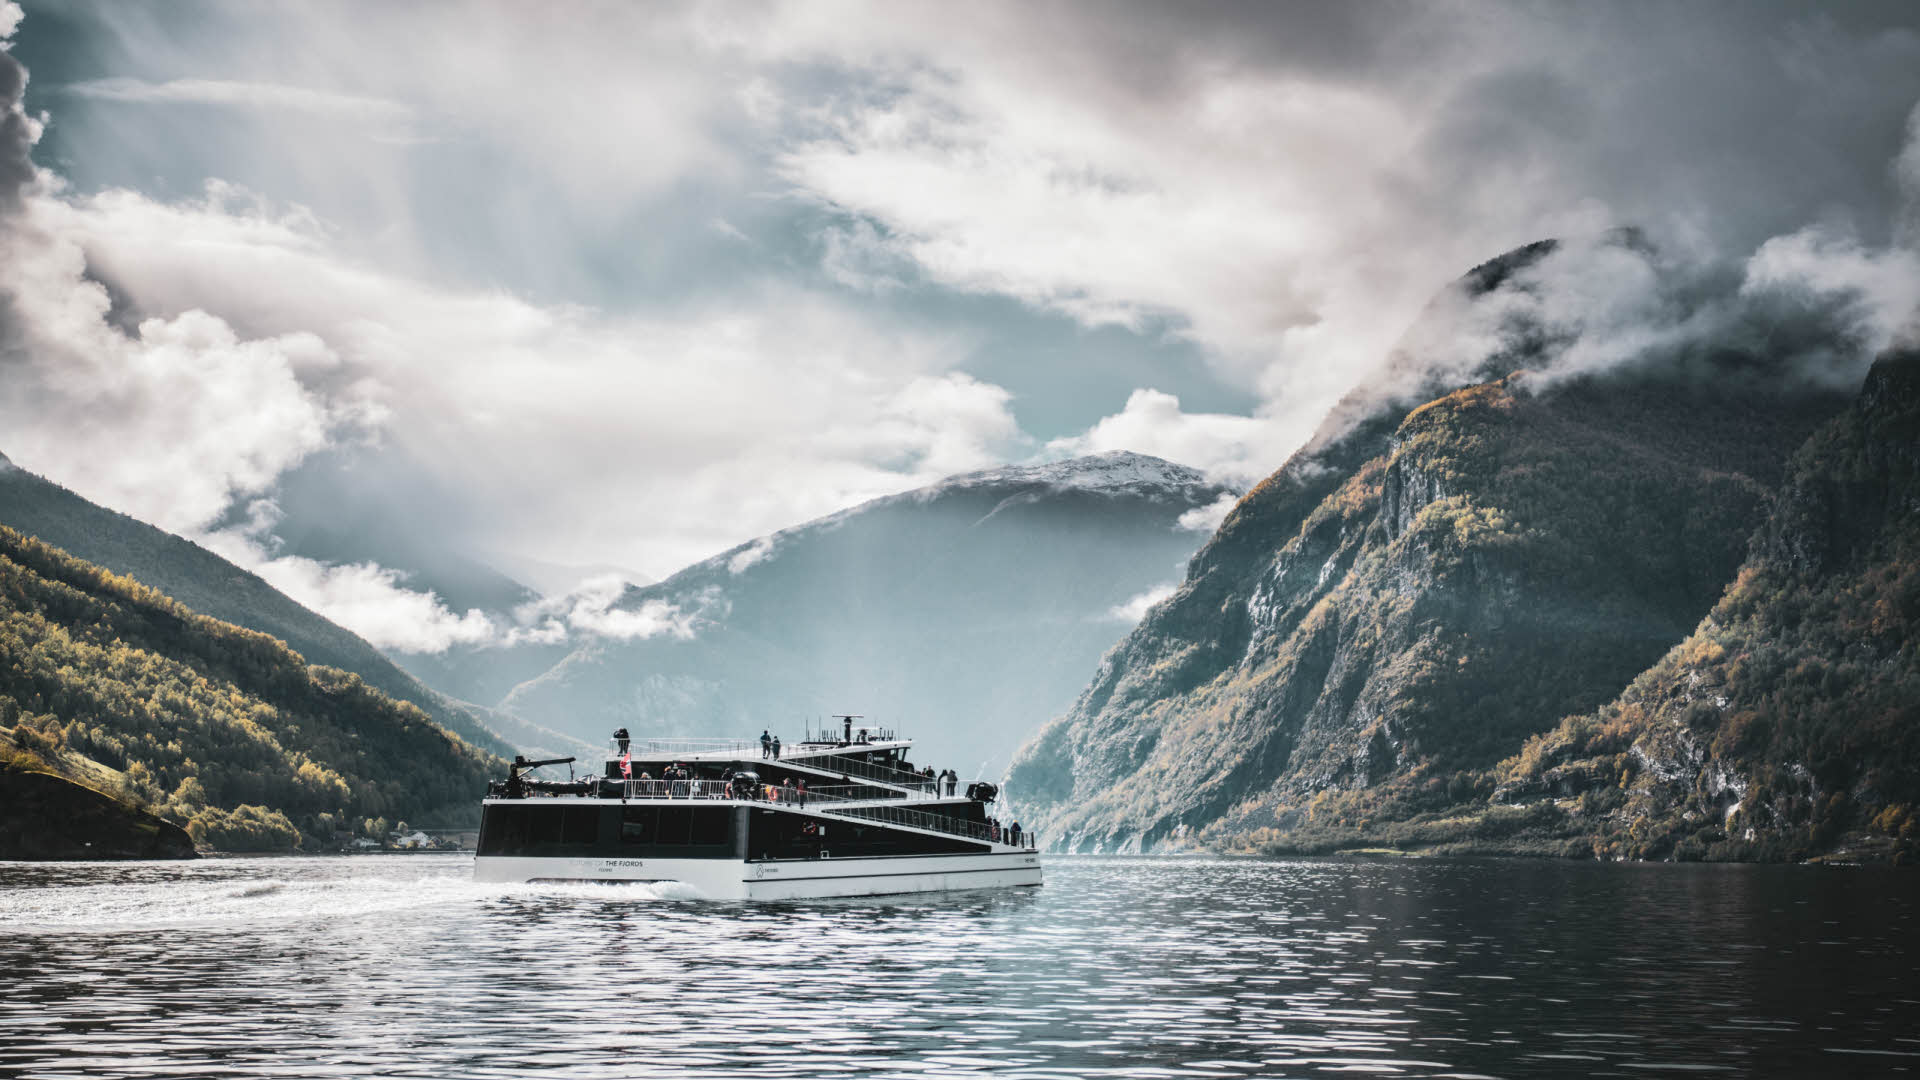 Le bateau électrique Future of The Fjords navigue sur les eaux calmes du Nærøyfjord inscrit au patrimoine mondial de l’UNESCO par une journée d’automne ensoleillée.